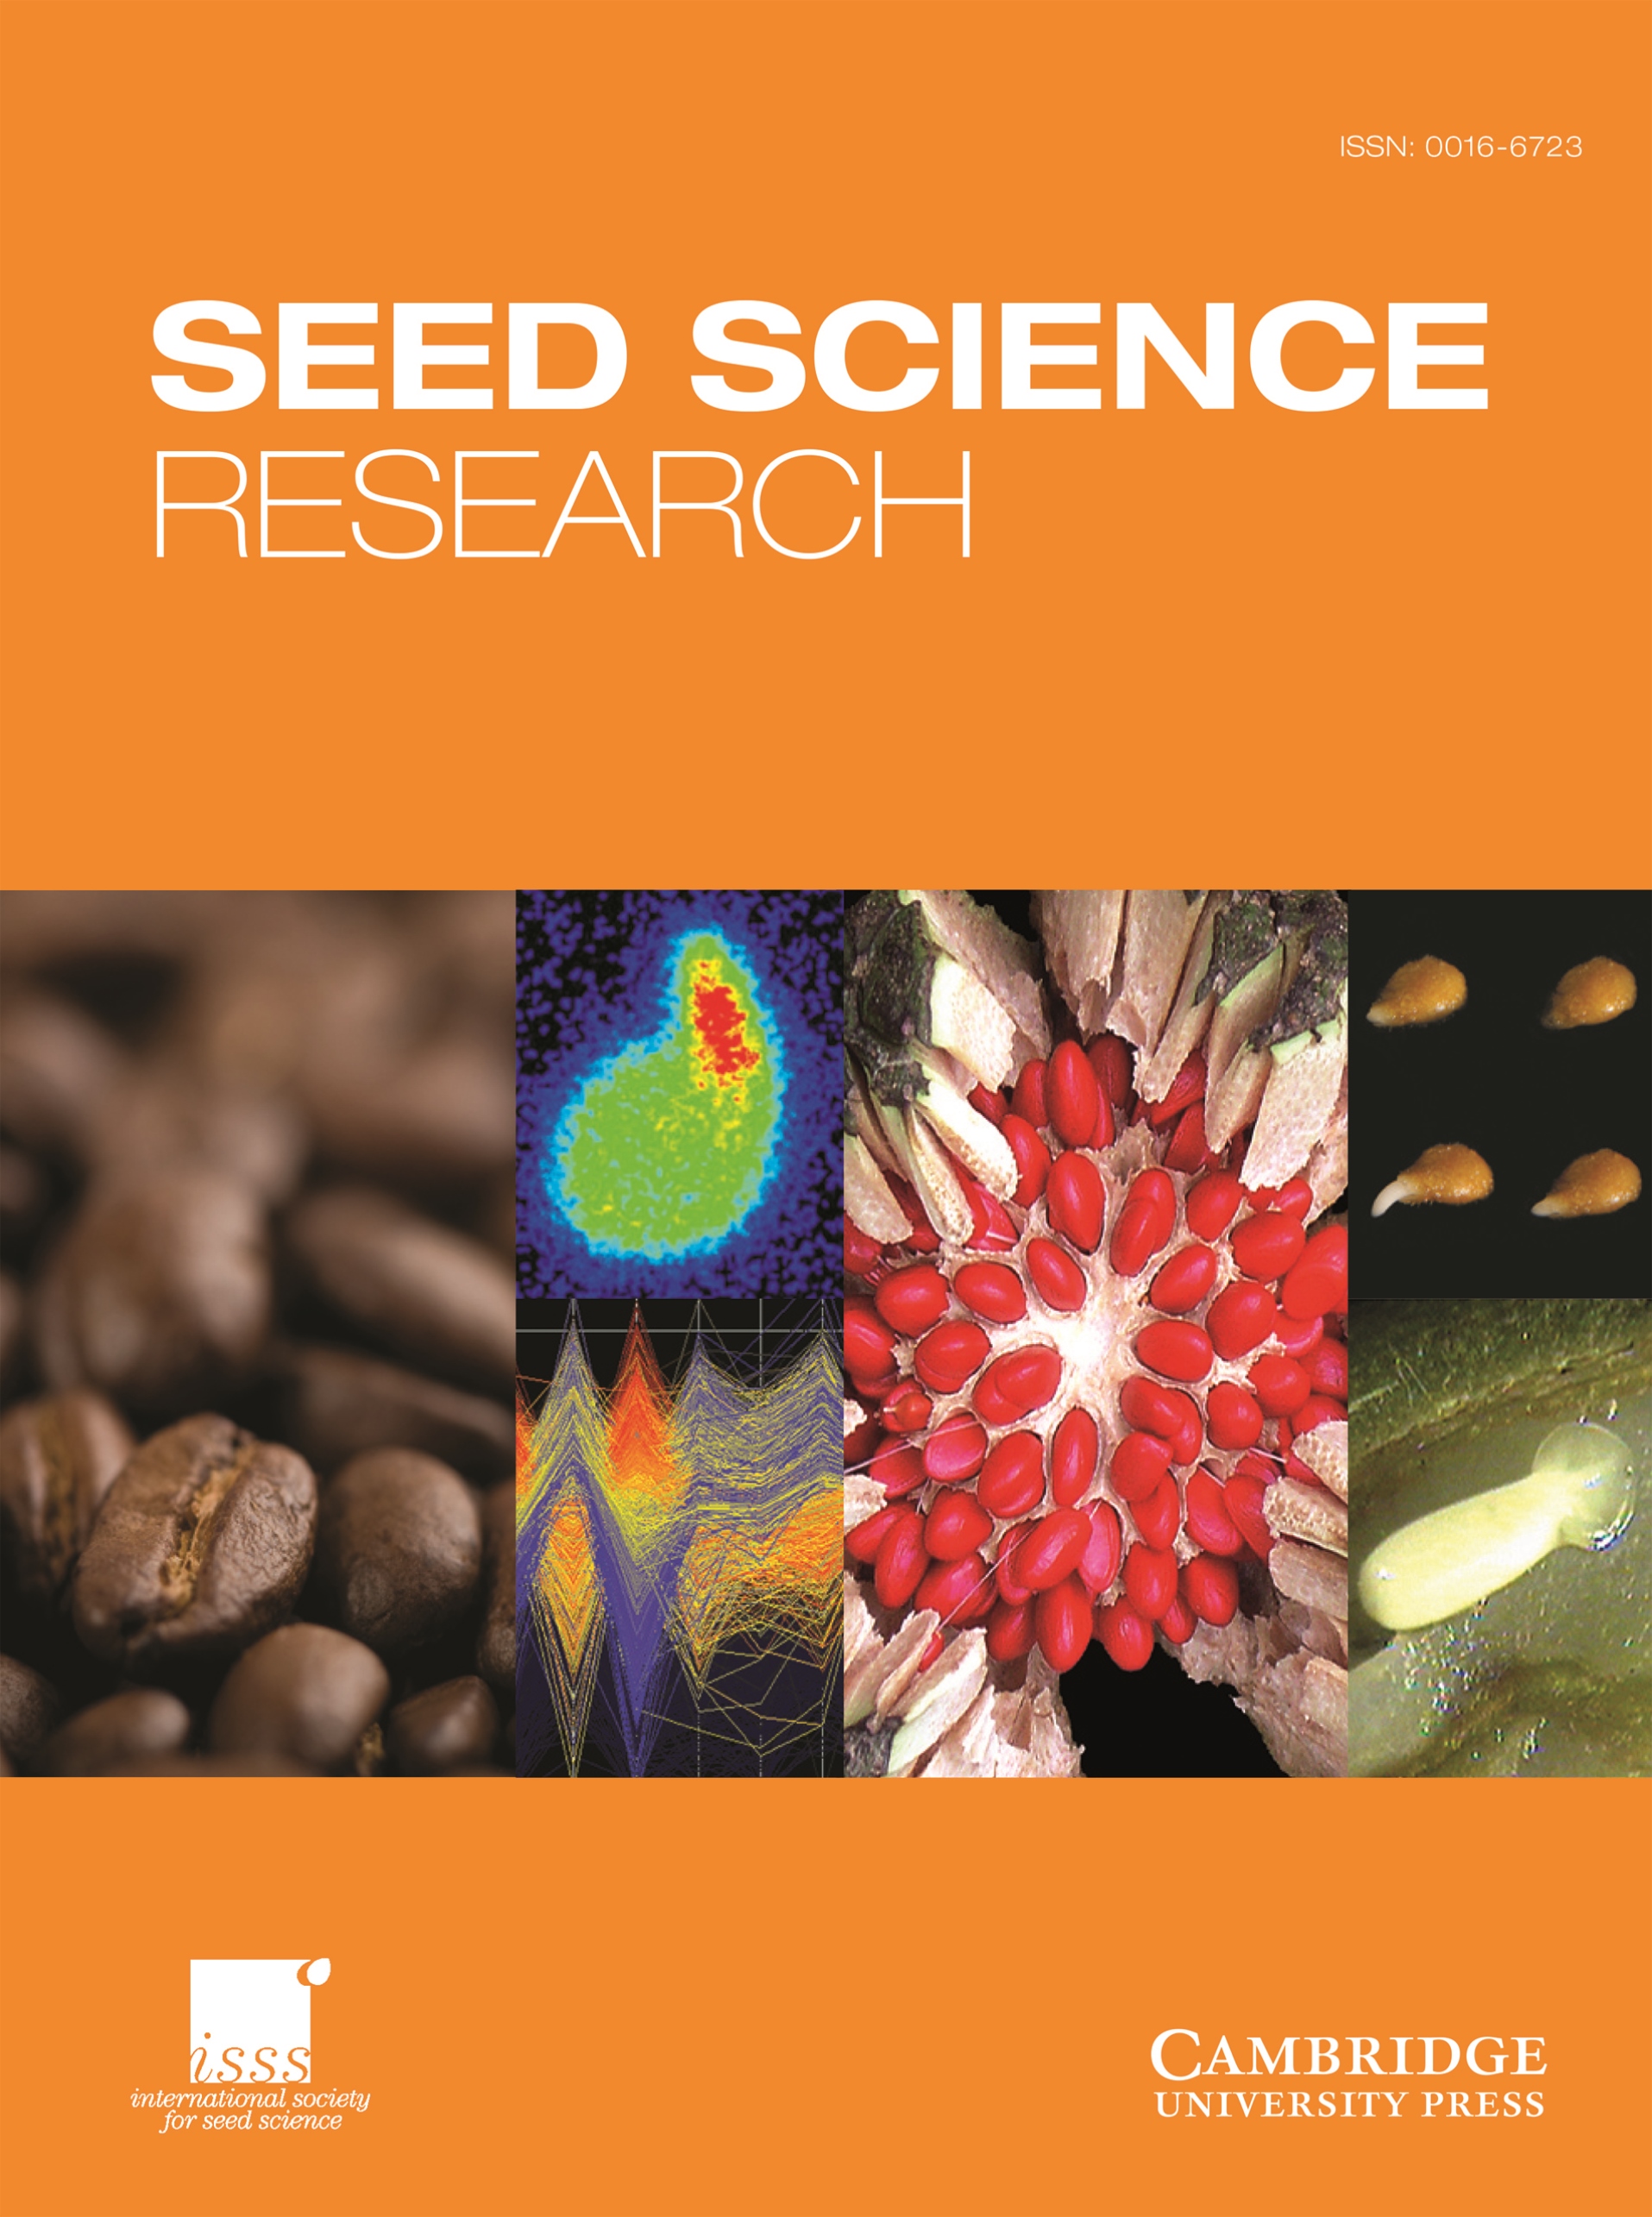 Seed Storage [IMAGE]  EurekAlert! Science News Releases